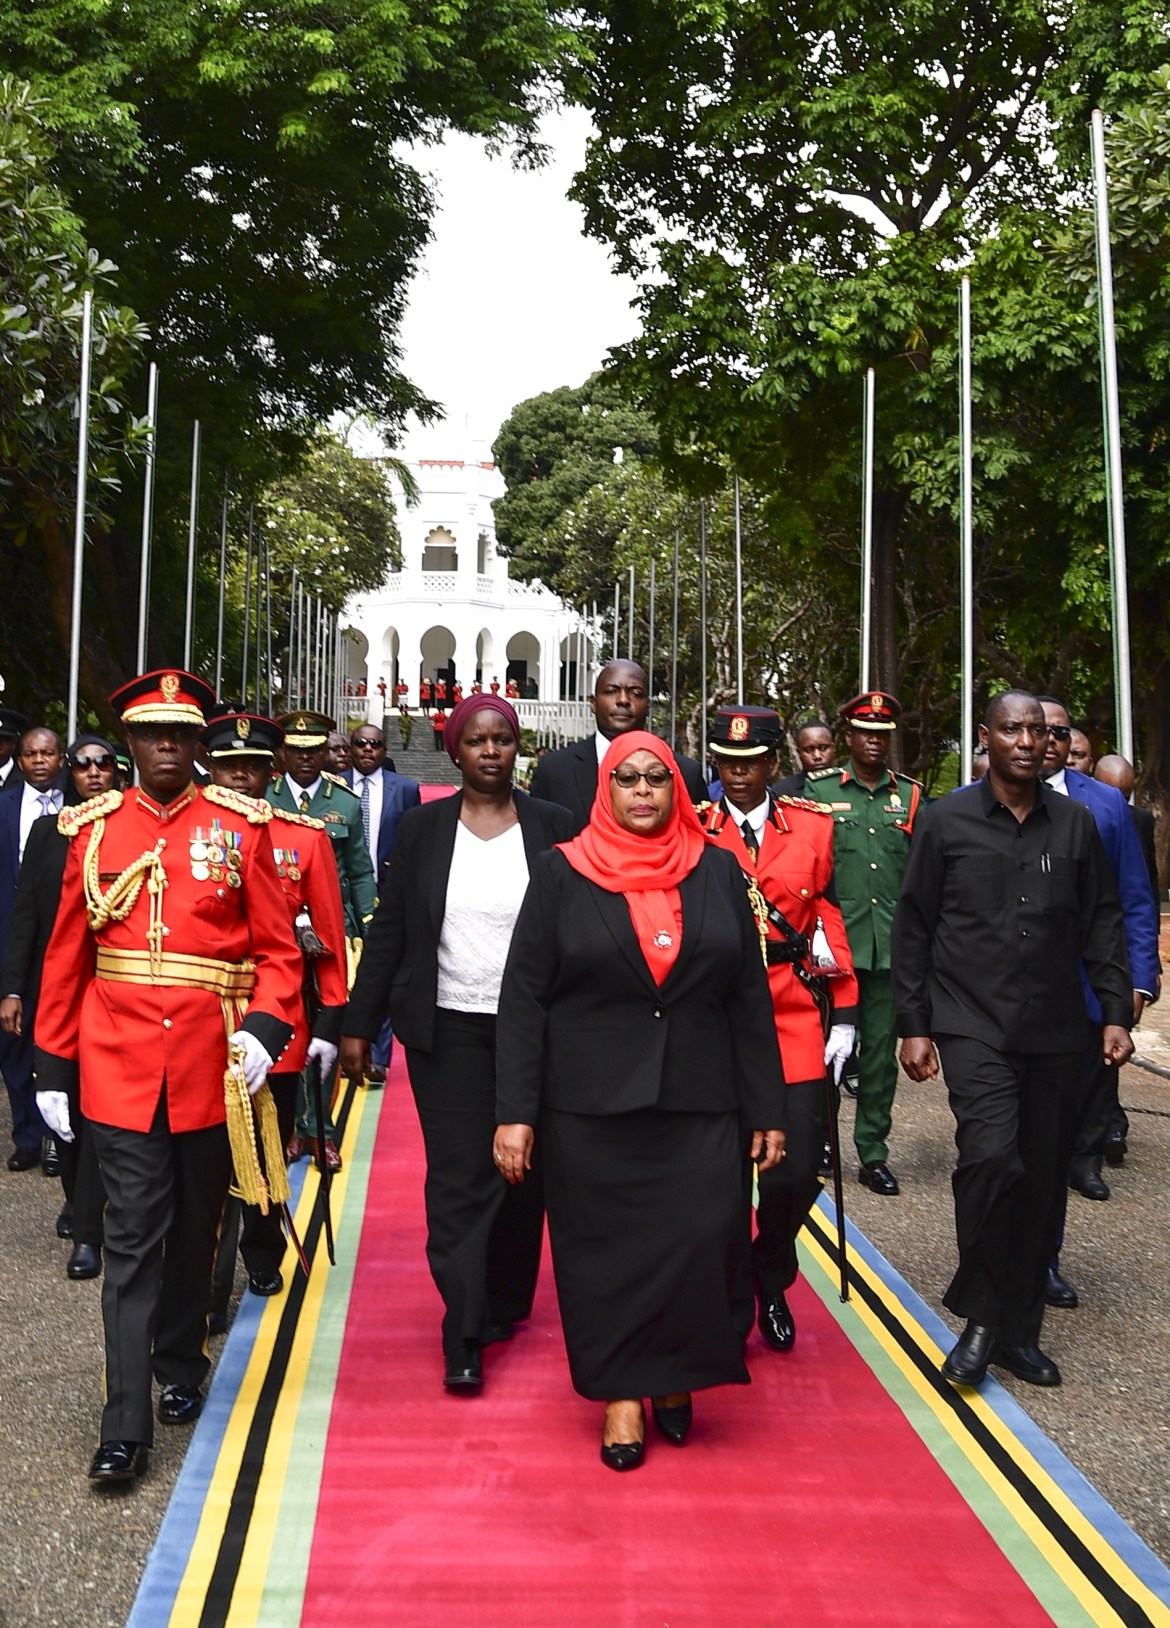 الرئيسة التنزانية الجديدة (61 عاما) دعت شعبها إلى وحدة الصف والتطلع للمستقبل بأمل وثقة (الأناضول)